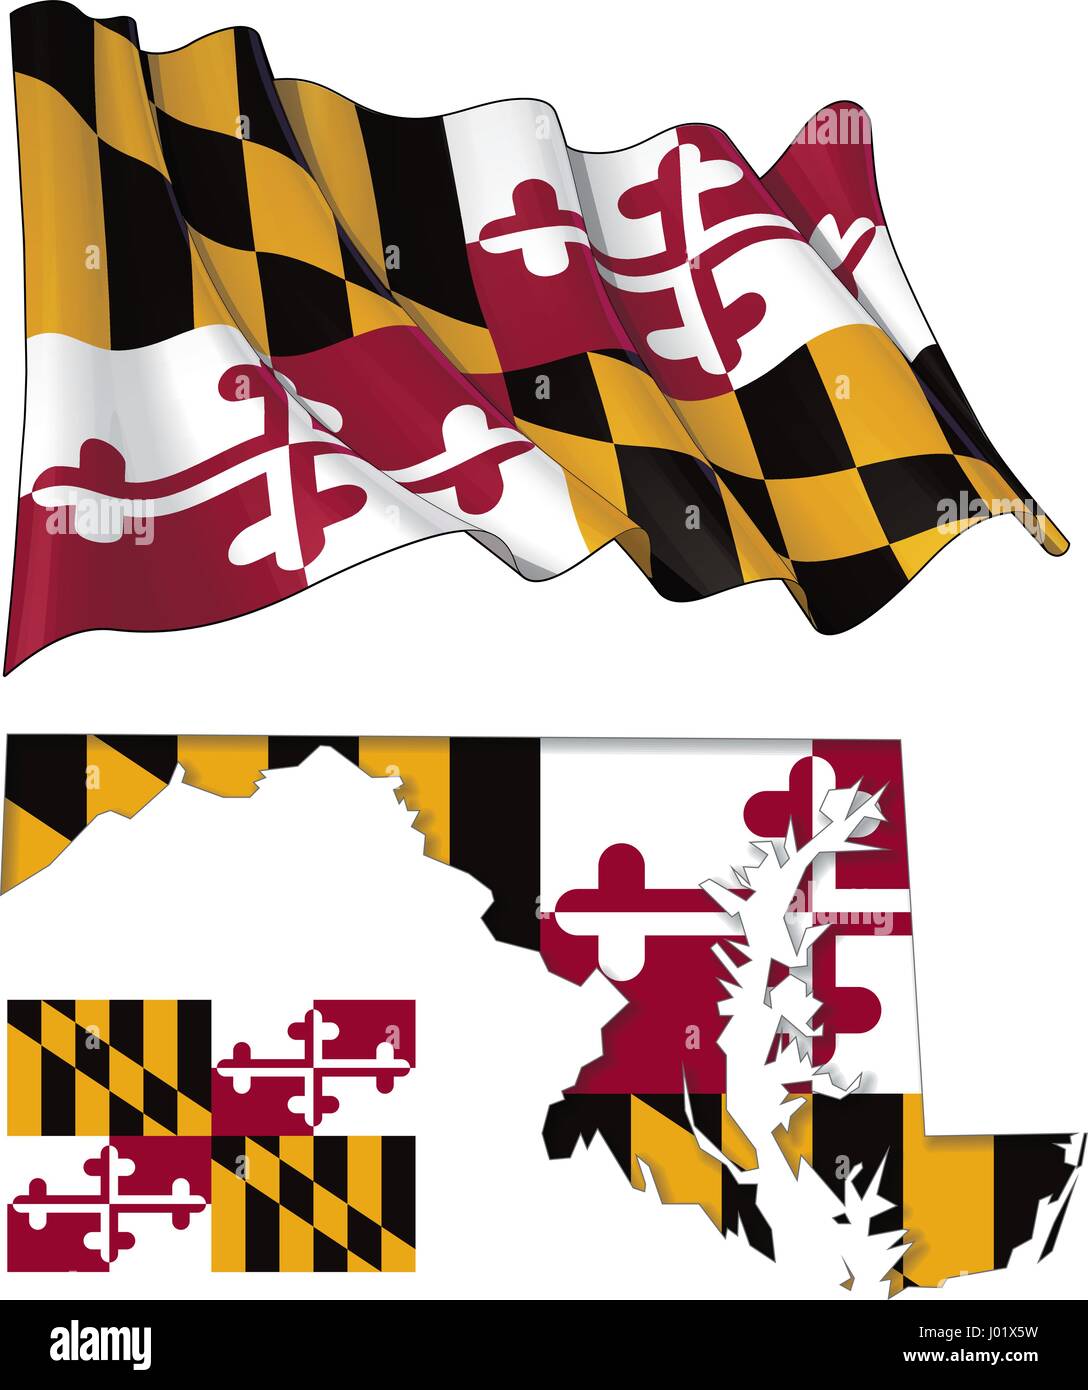 Vektor-Illustrationen der Flagge Marylands, winken und flach, und die Karte mit der Flagge eingefügt und Schatten nach innen. Alle Elemente ordentlich auf gut beschrieben Schicht Stock Vektor